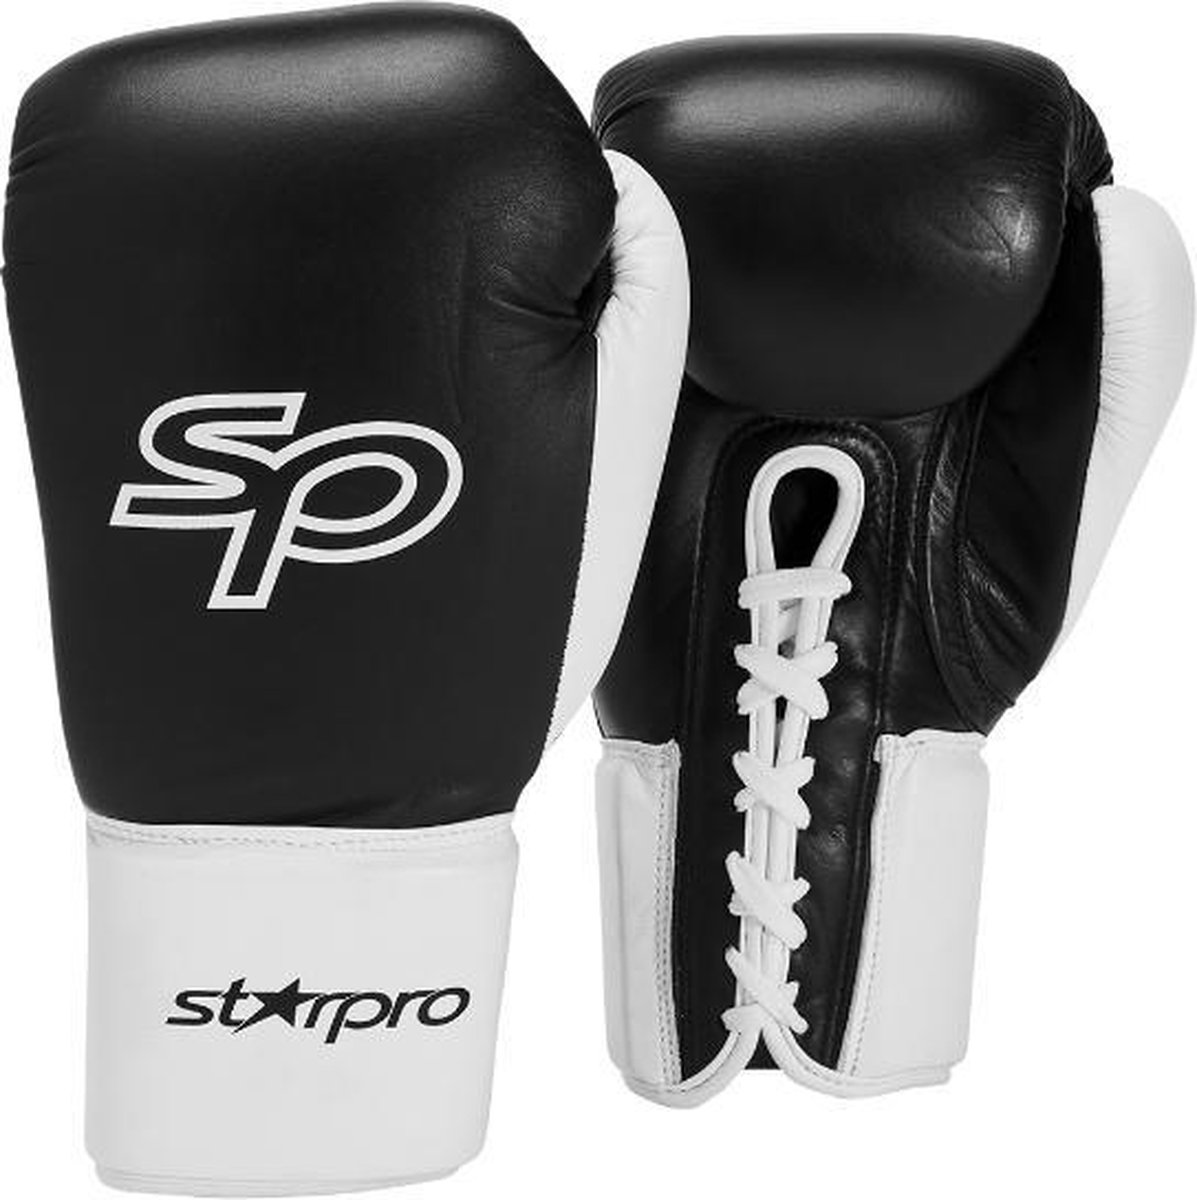 Bokshandschoen met veters (all leather) Starpro | zwart-wit - Product Gewicht: 12OZ